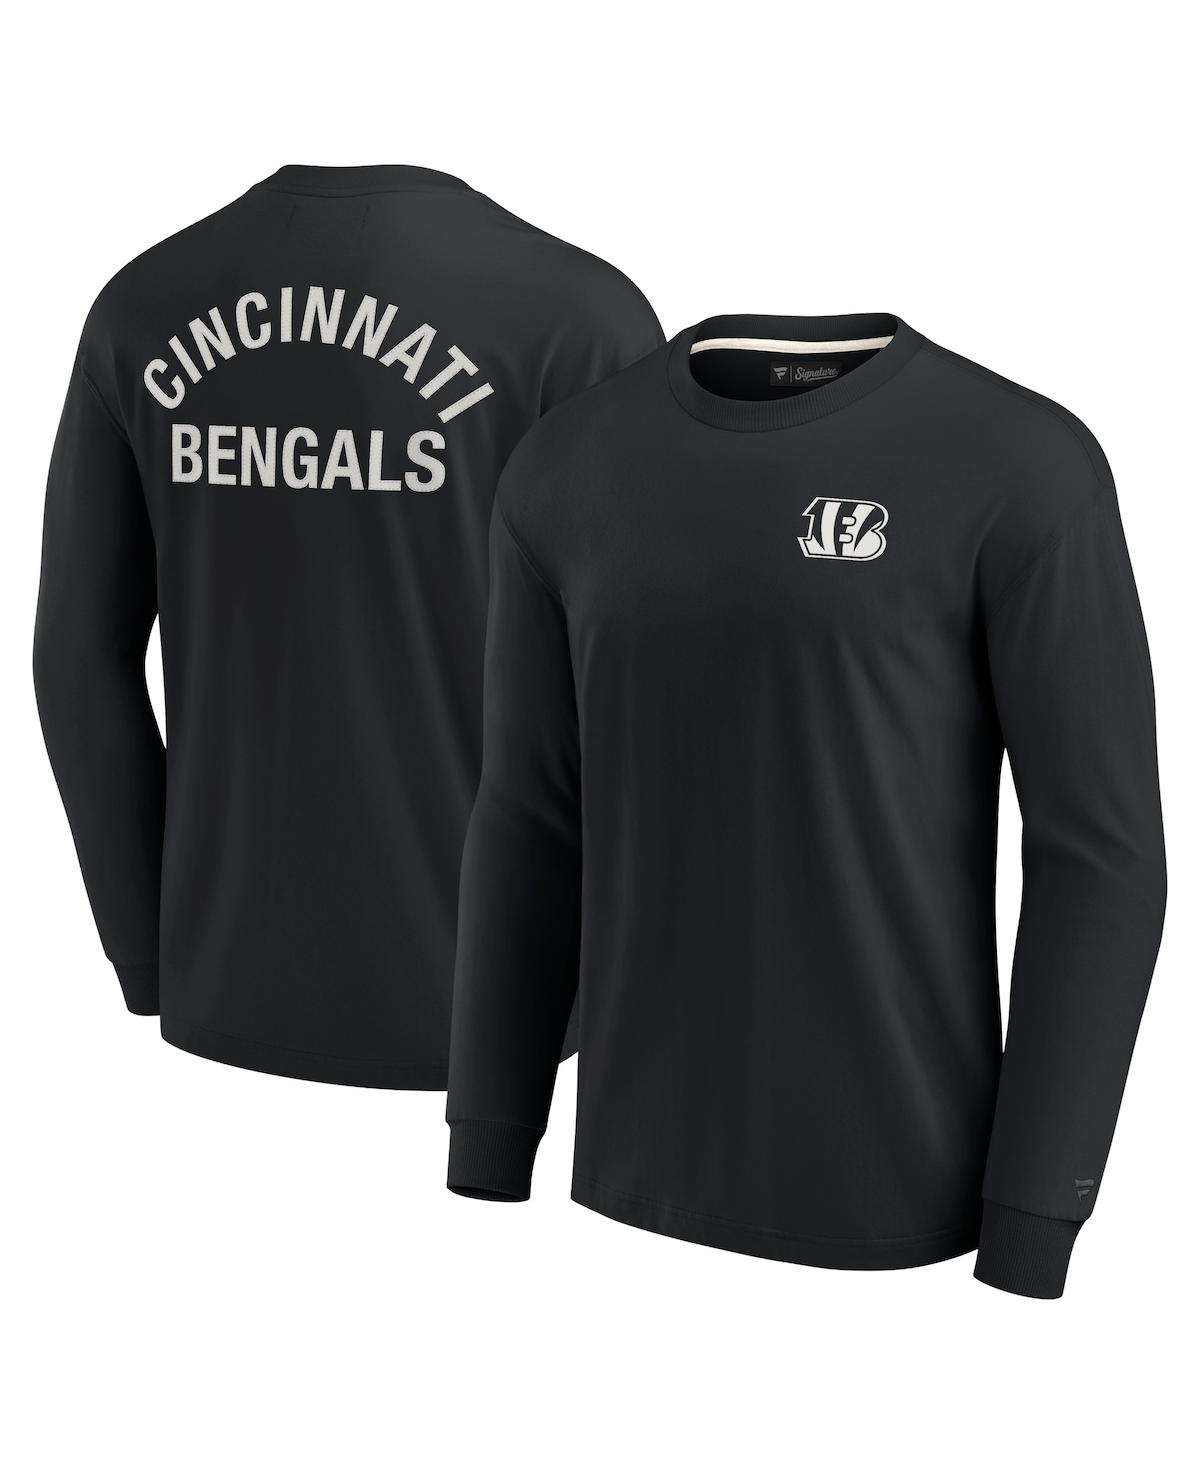 Men's and Women's Fanatics Signature Black Cincinnati Bengals Super Soft Long Sleeve T-shirt - Black